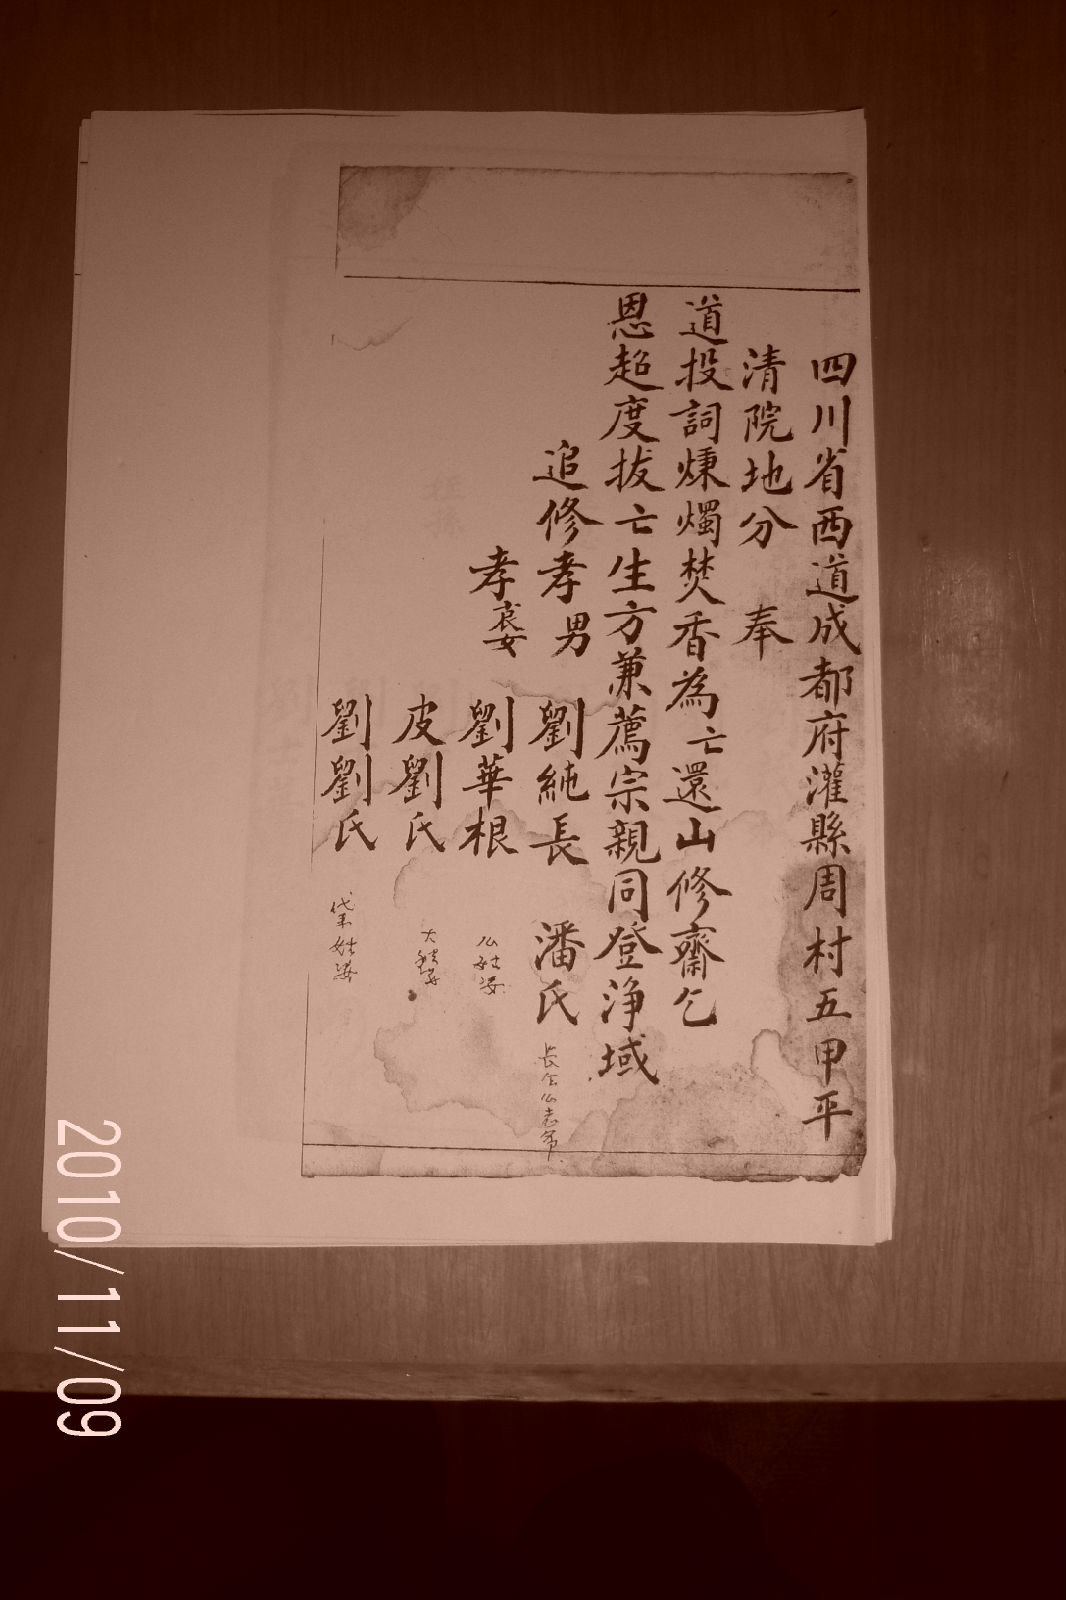 族人劉映福提供解放前道場記錄本複印件